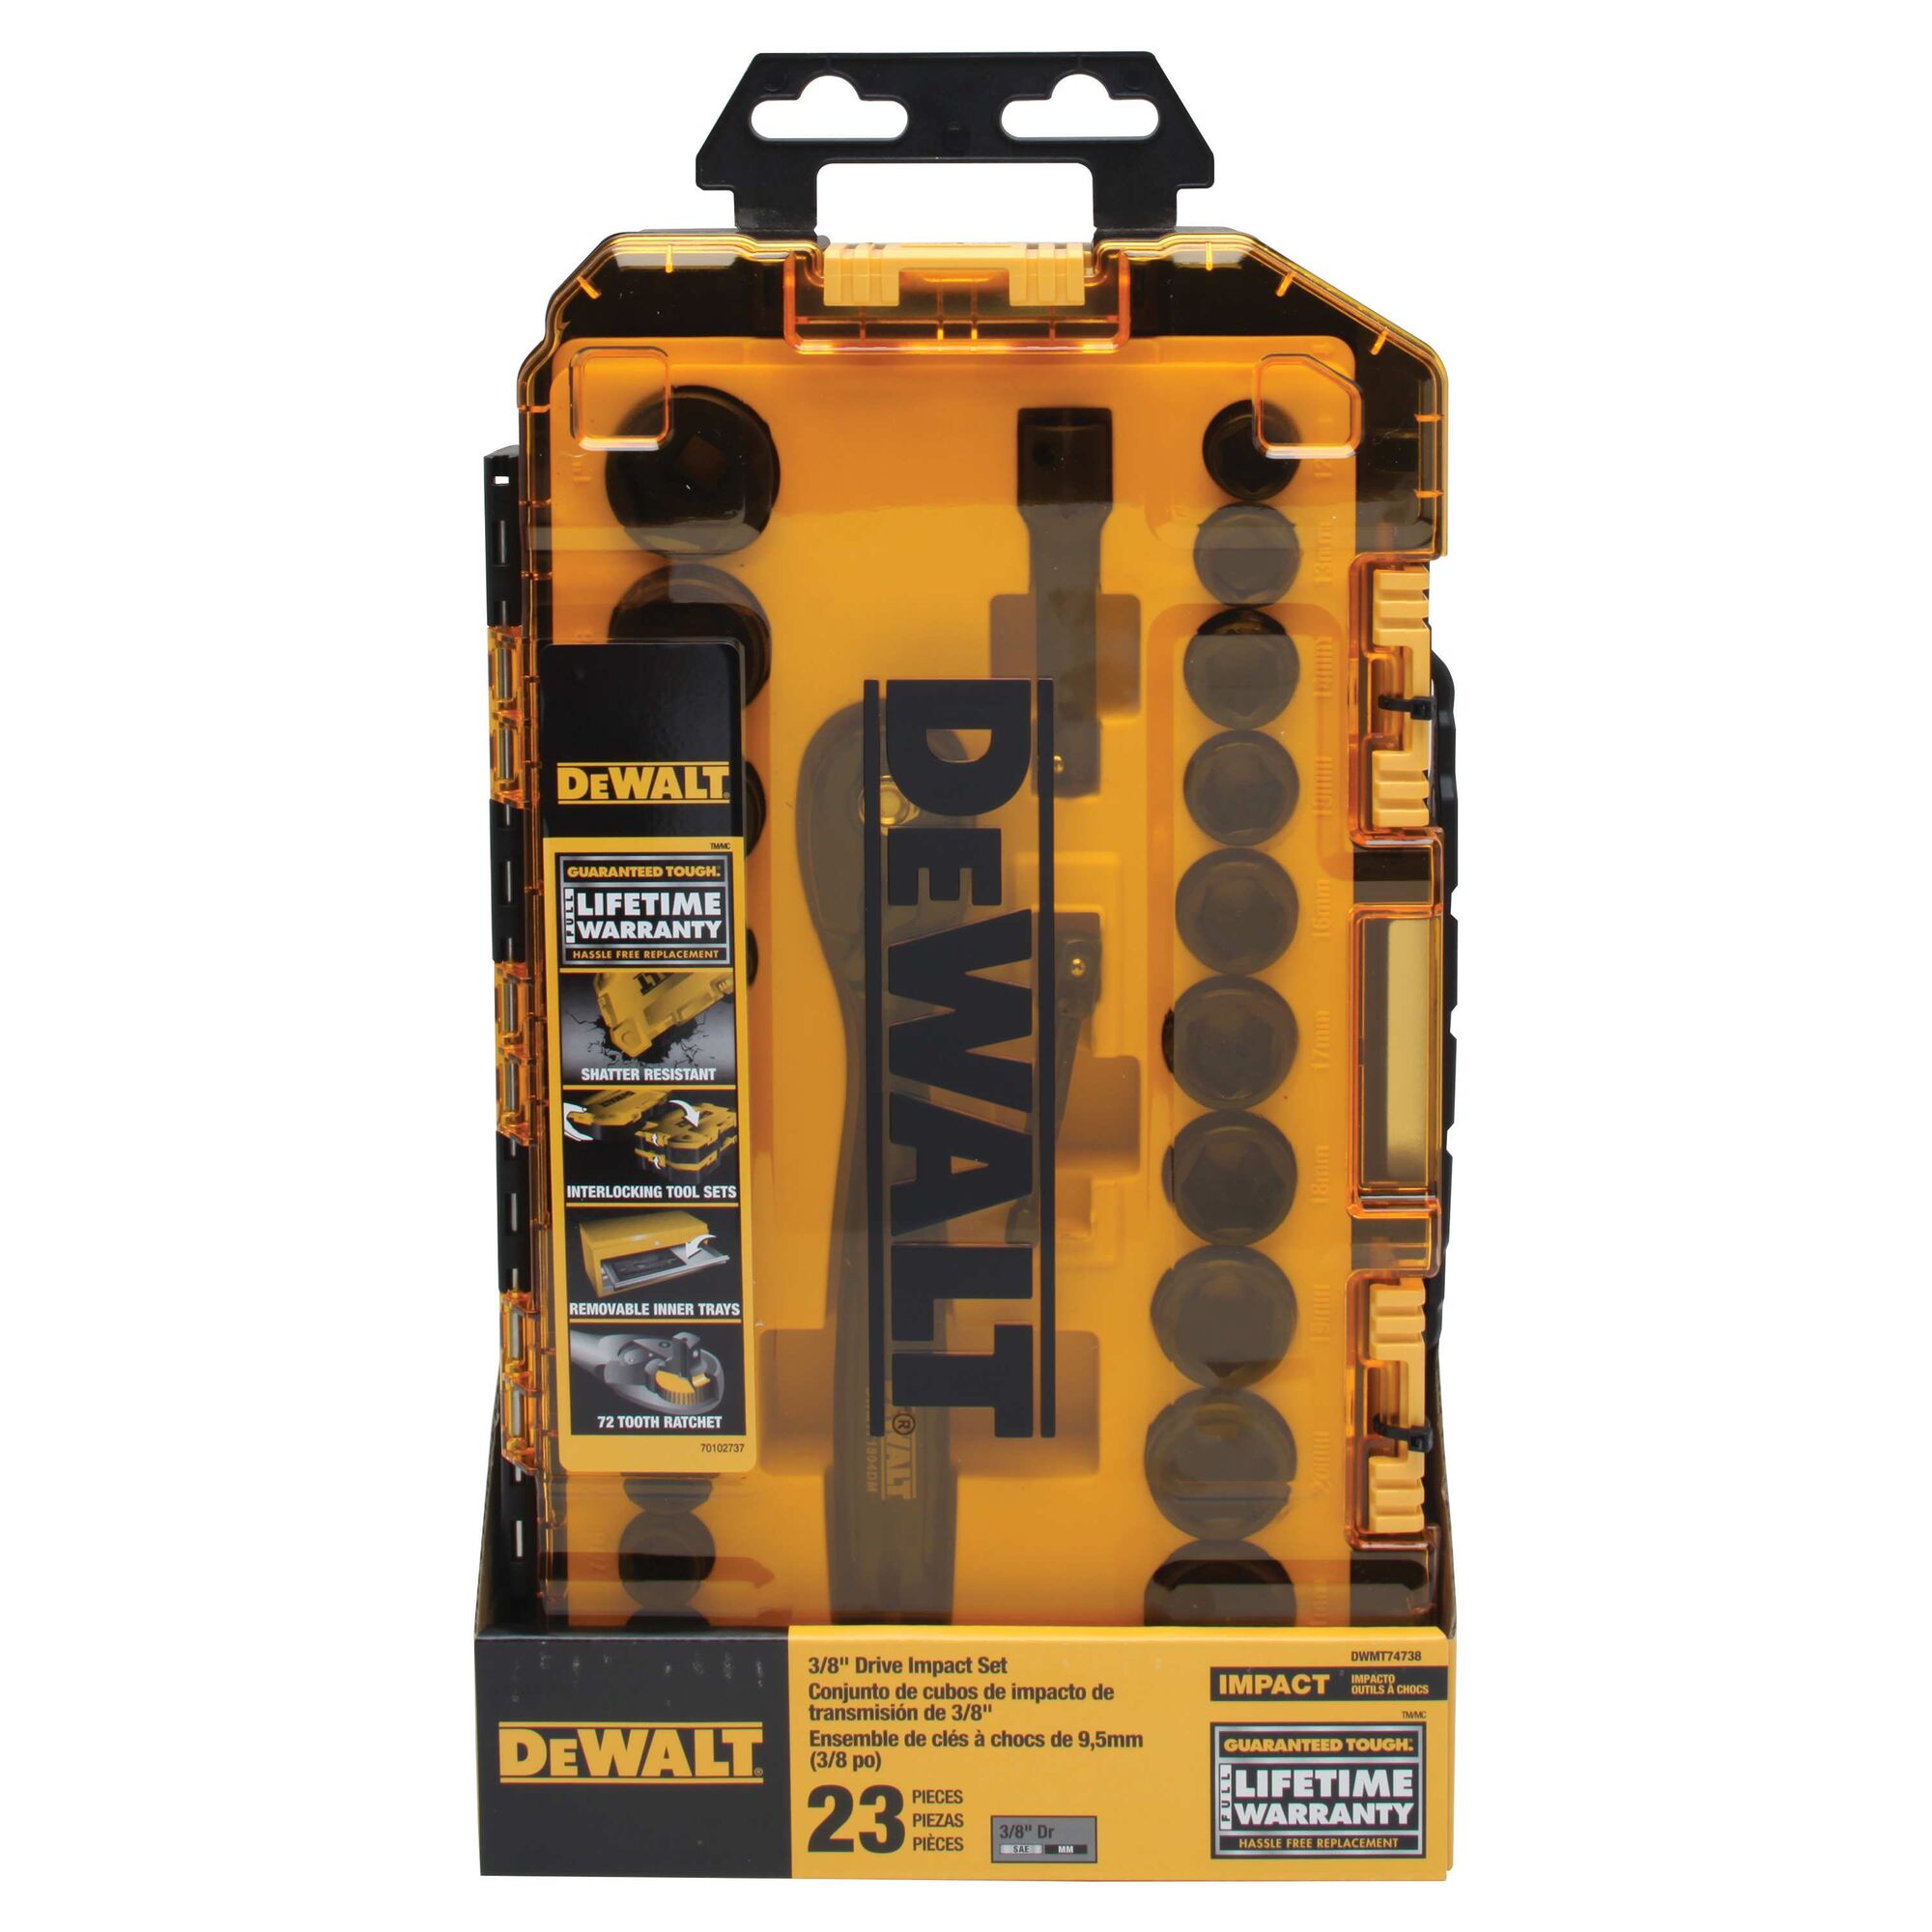 DEWALT DWMT74738 Tough Box 23 PC 3/8 Drive Impact Socket Set